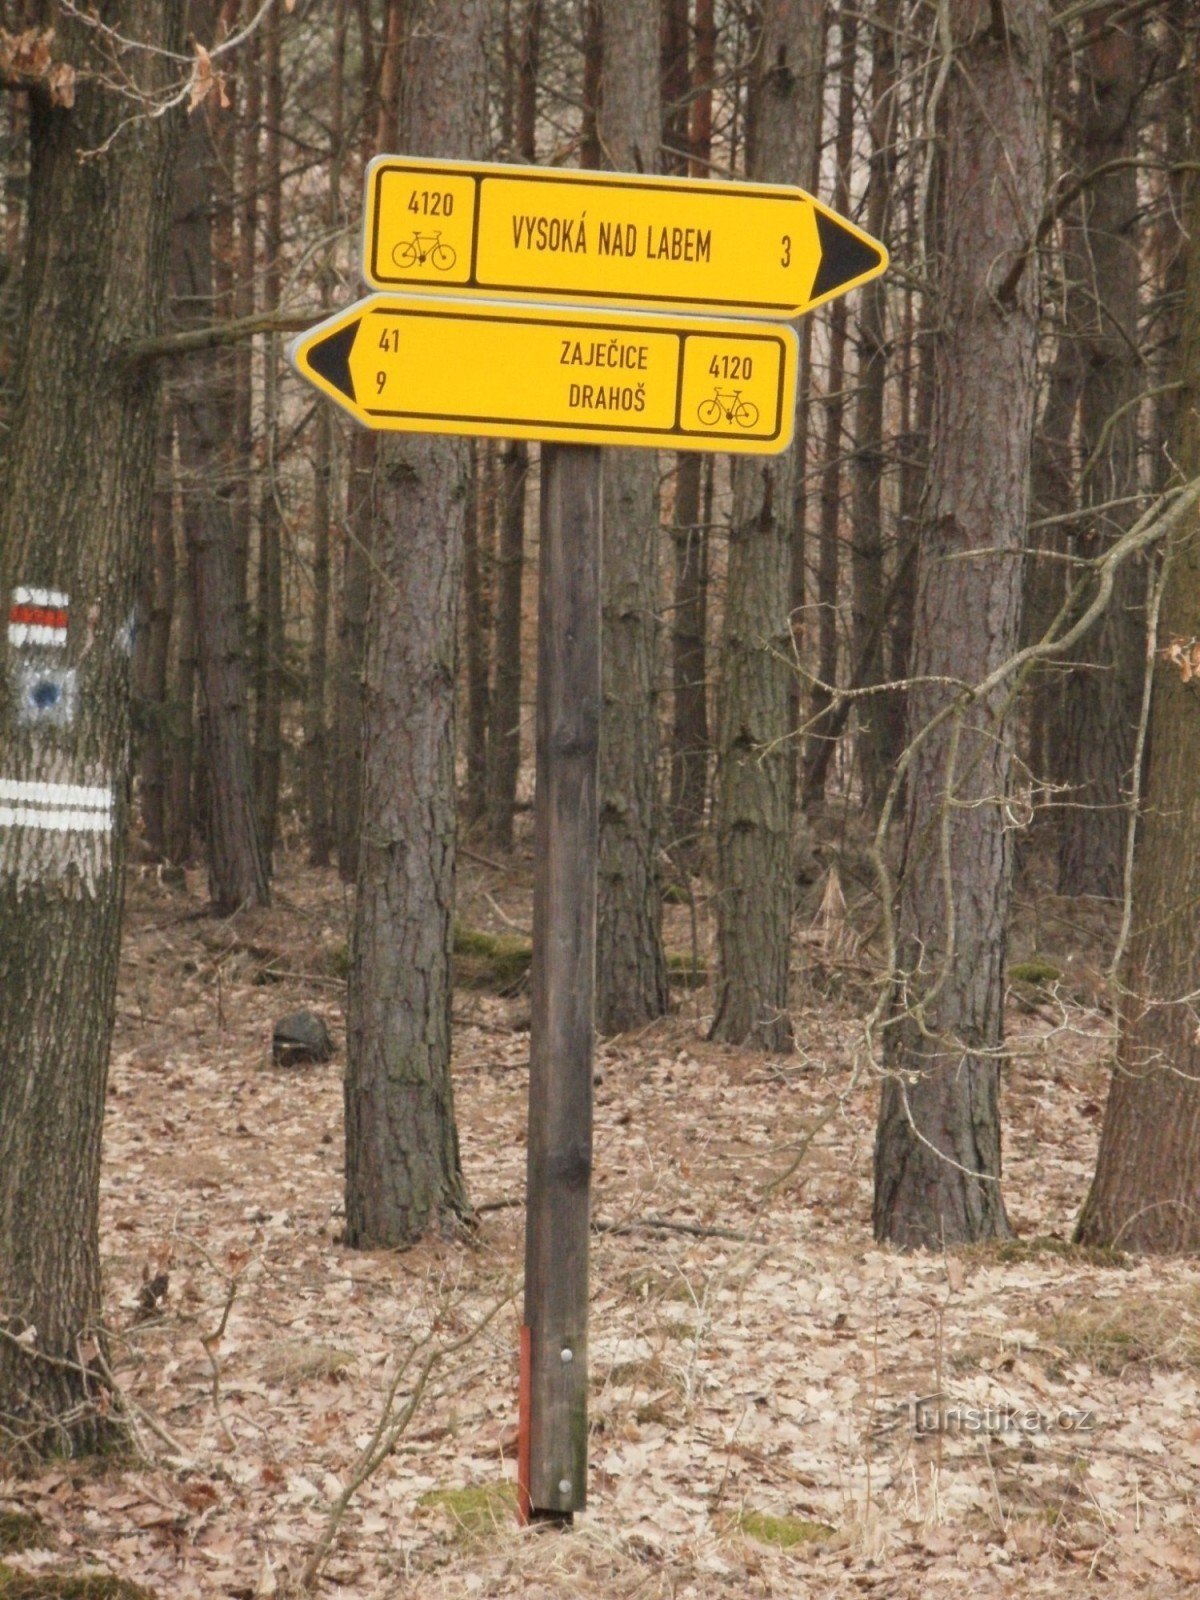 encruzilhada de ciclismo na floresta Vysoké nad Labem